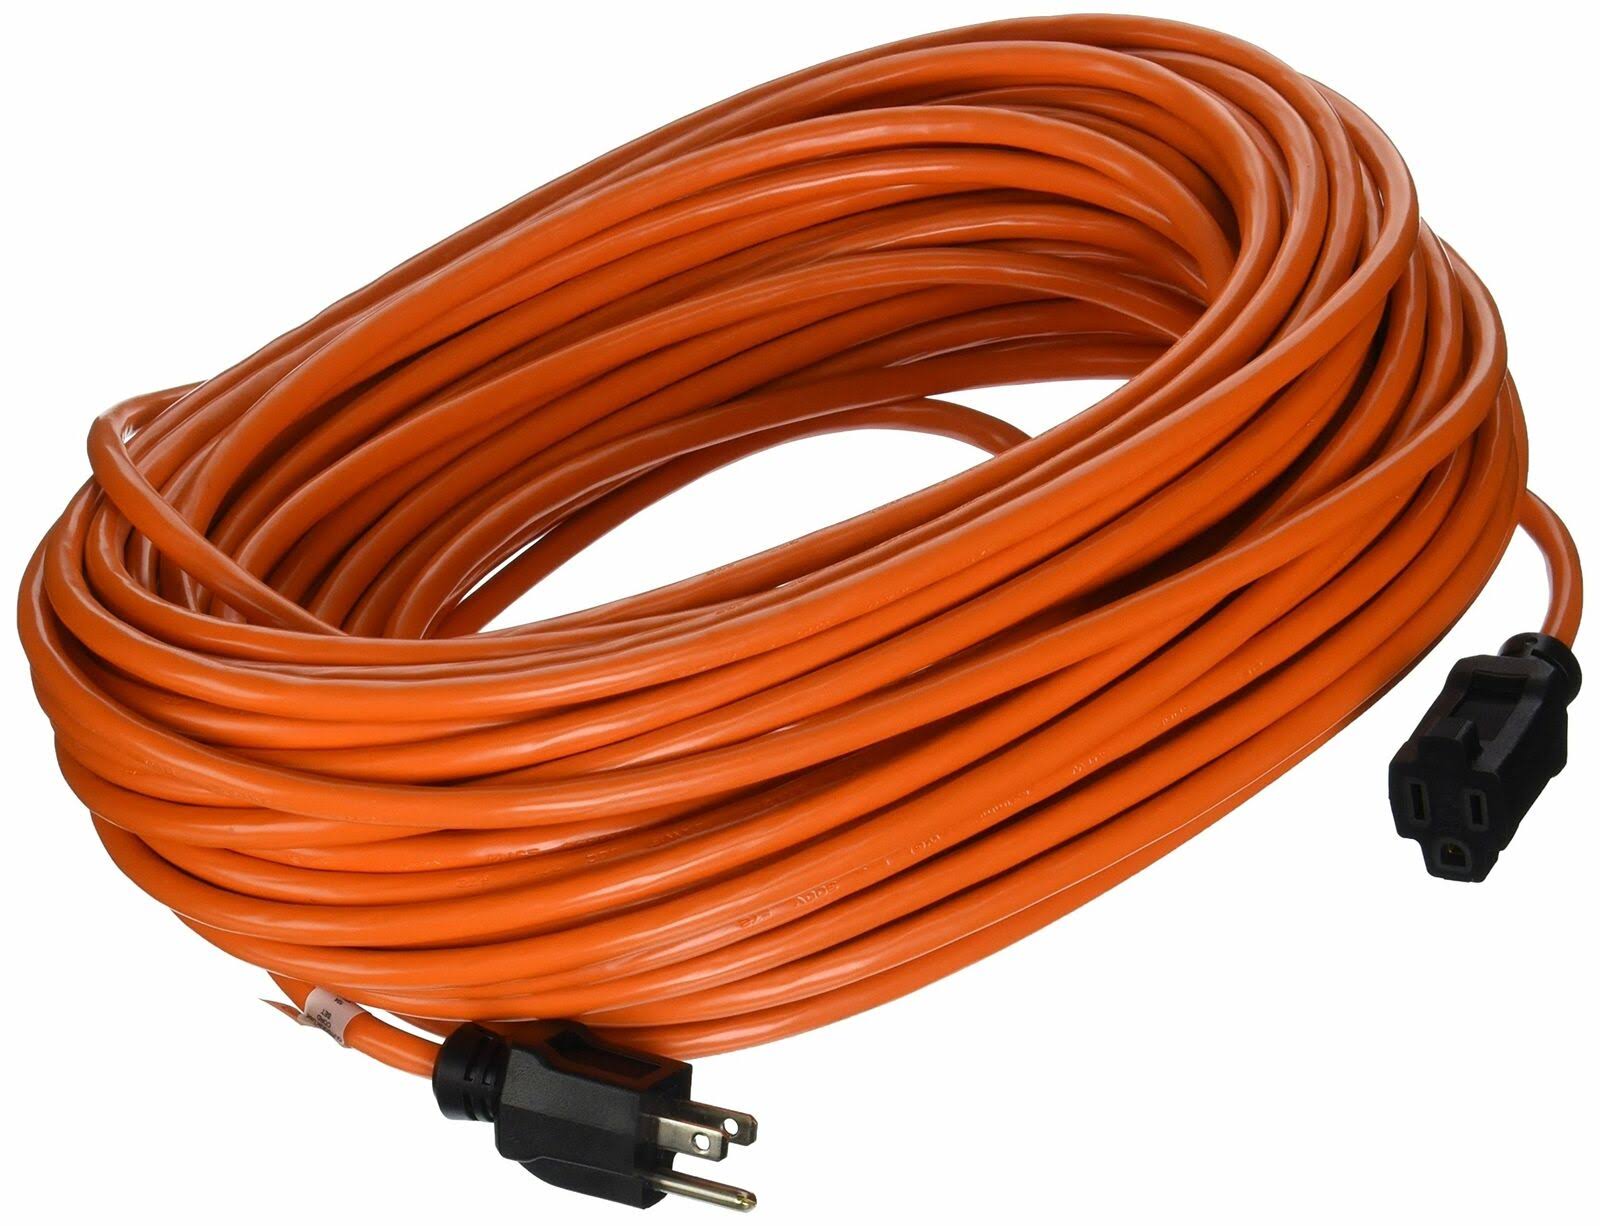 Prime EC501635 Wire and Cable - Orange, 100'